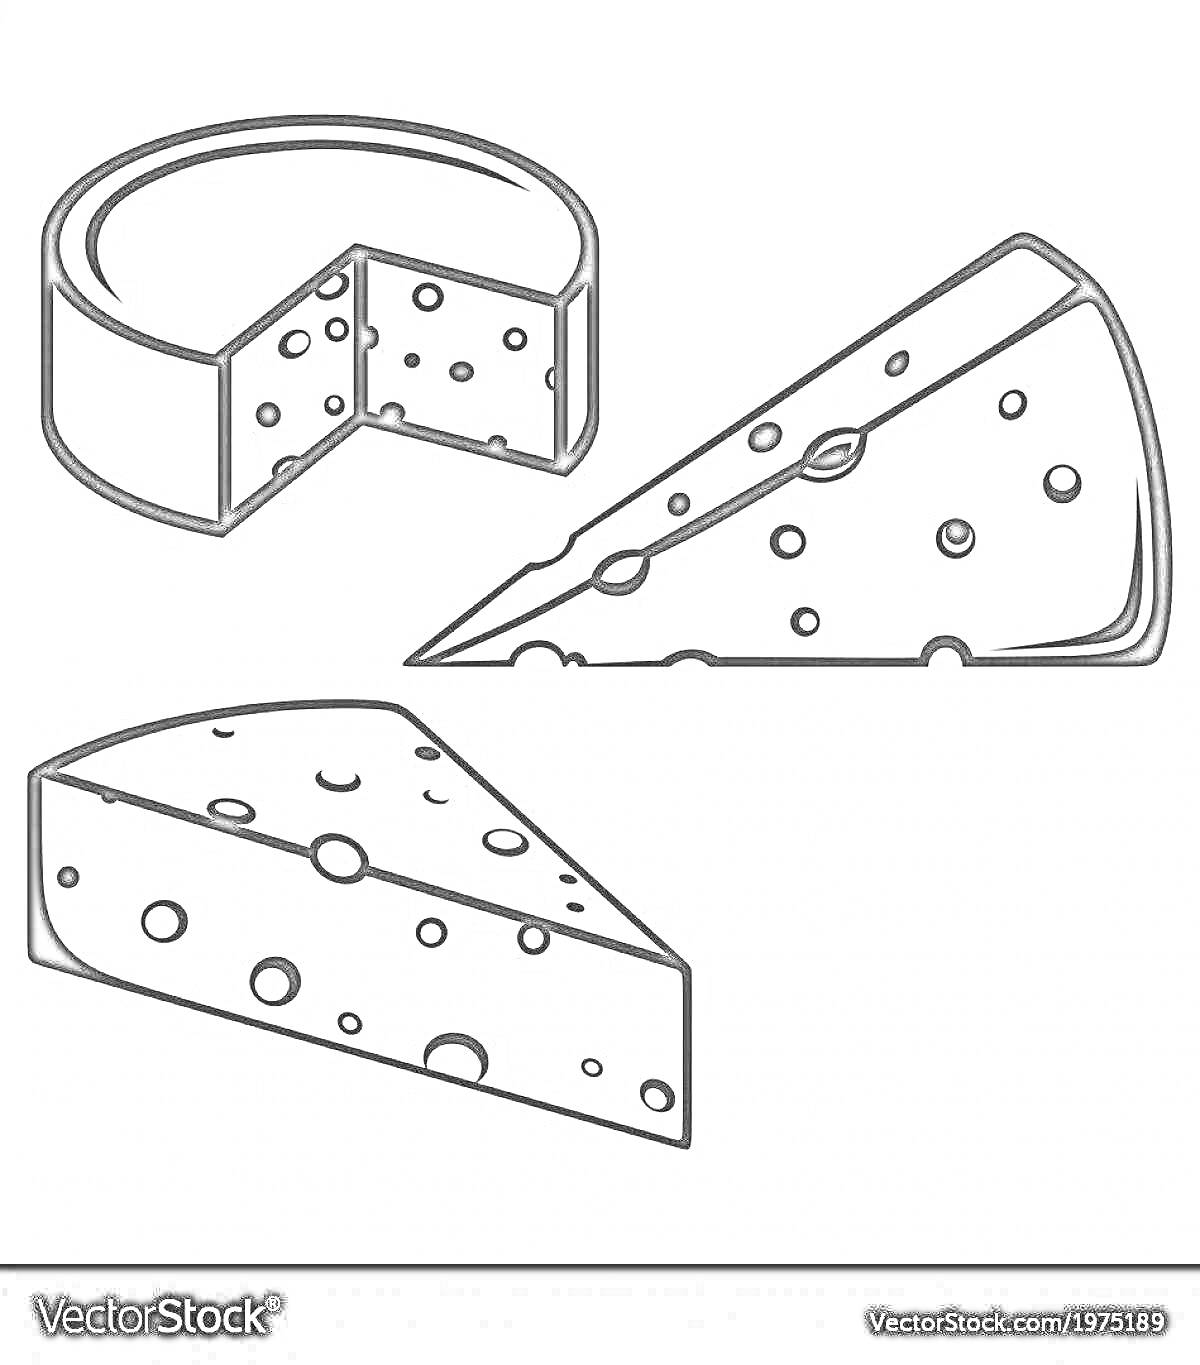 Раскраска Три куска сыра: круглый сыр с вырезанным куском, треугольный кусок сыра, трапециевидный кусок сыра